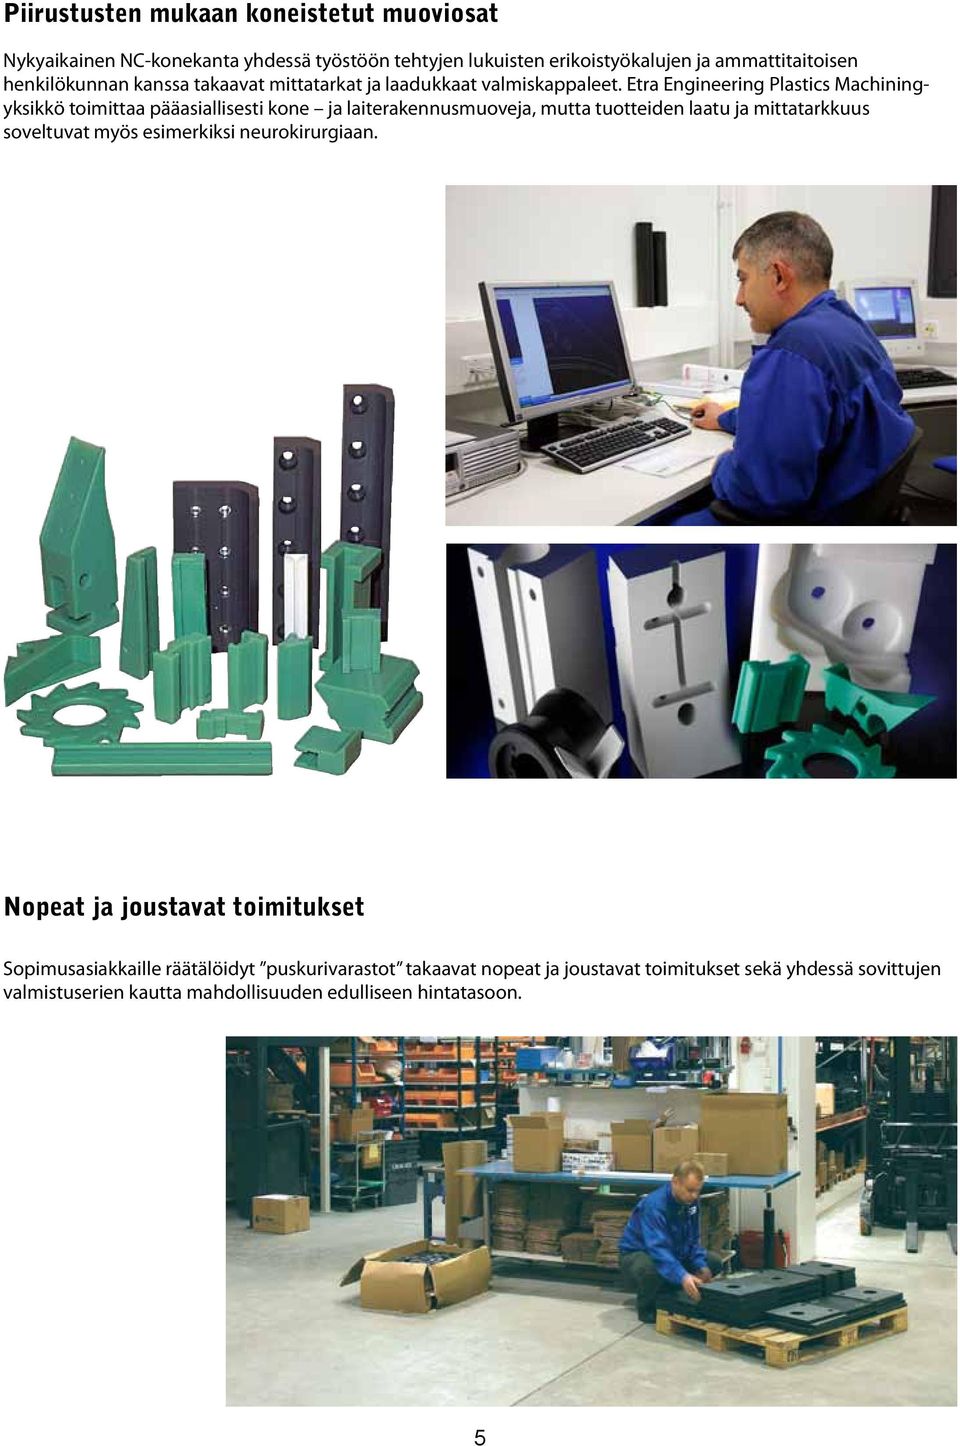 Etra Engineering Plastics Machiningyksikkö toimittaa pääasiallisesti kone ja laiterakennusmuoveja, mutta tuotteiden laatu ja mittatarkkuus soveltuvat